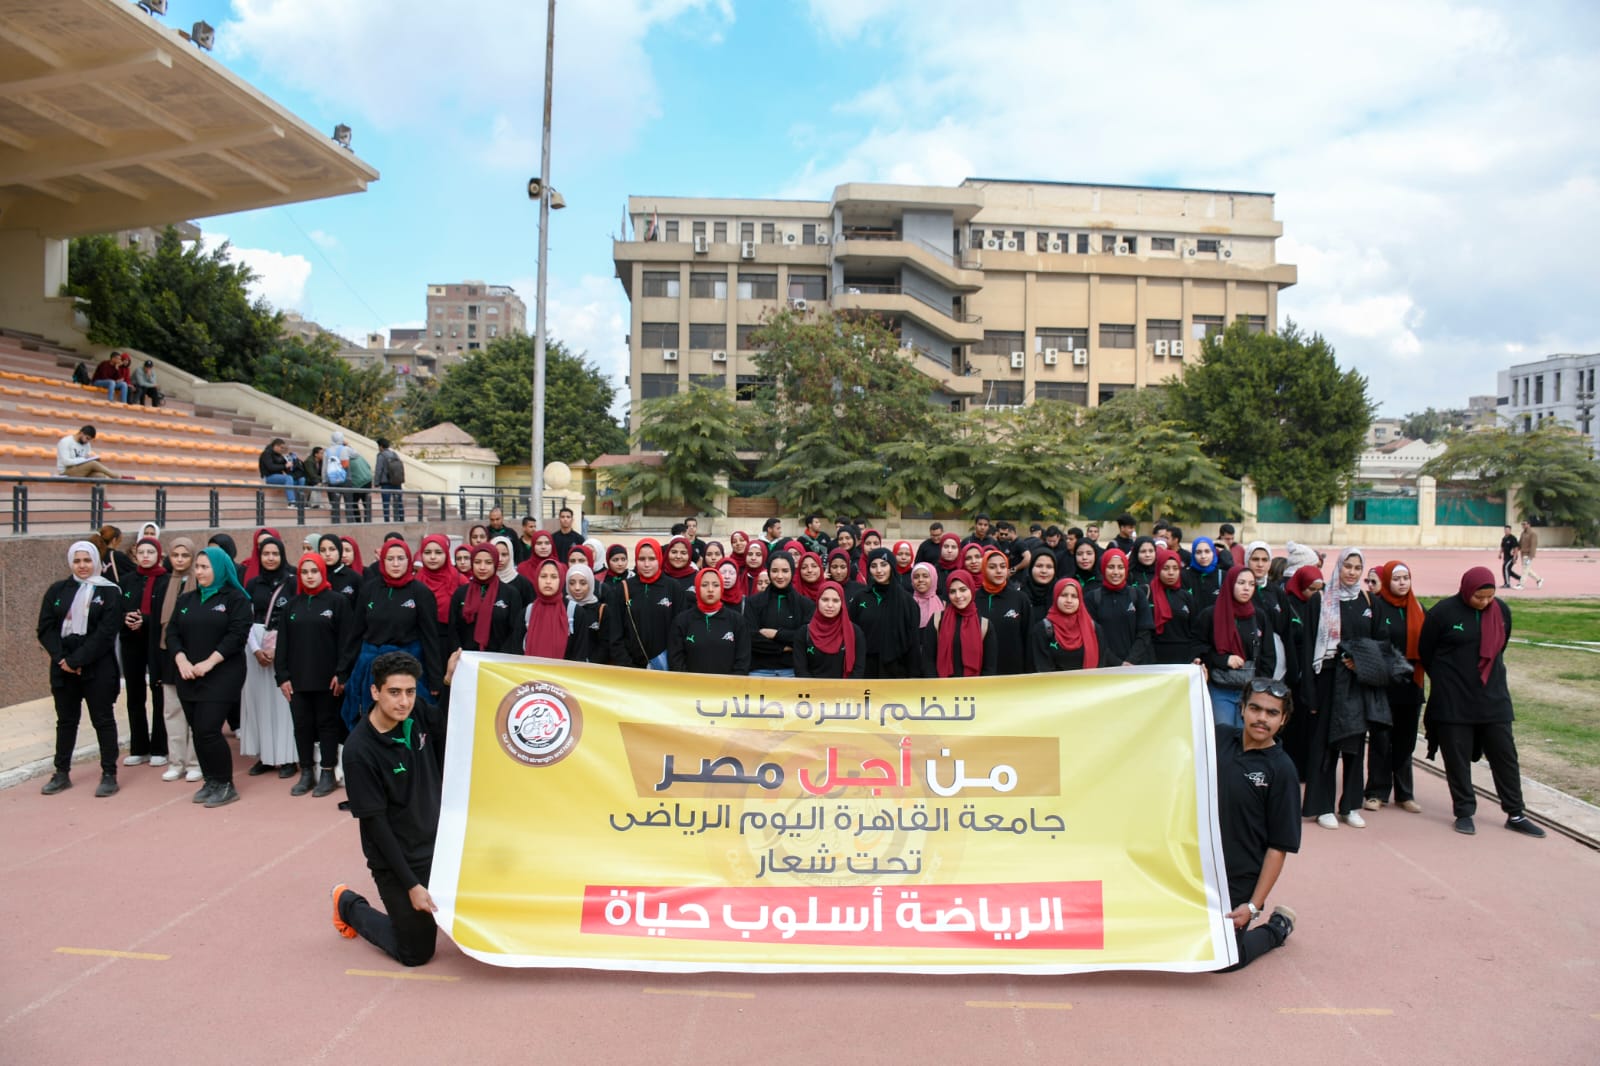 تحت شعار «الرياضة أسلوب حياة».. أسرة من أجل مصر تنظم يوم رياضي بجامعة القاهرة